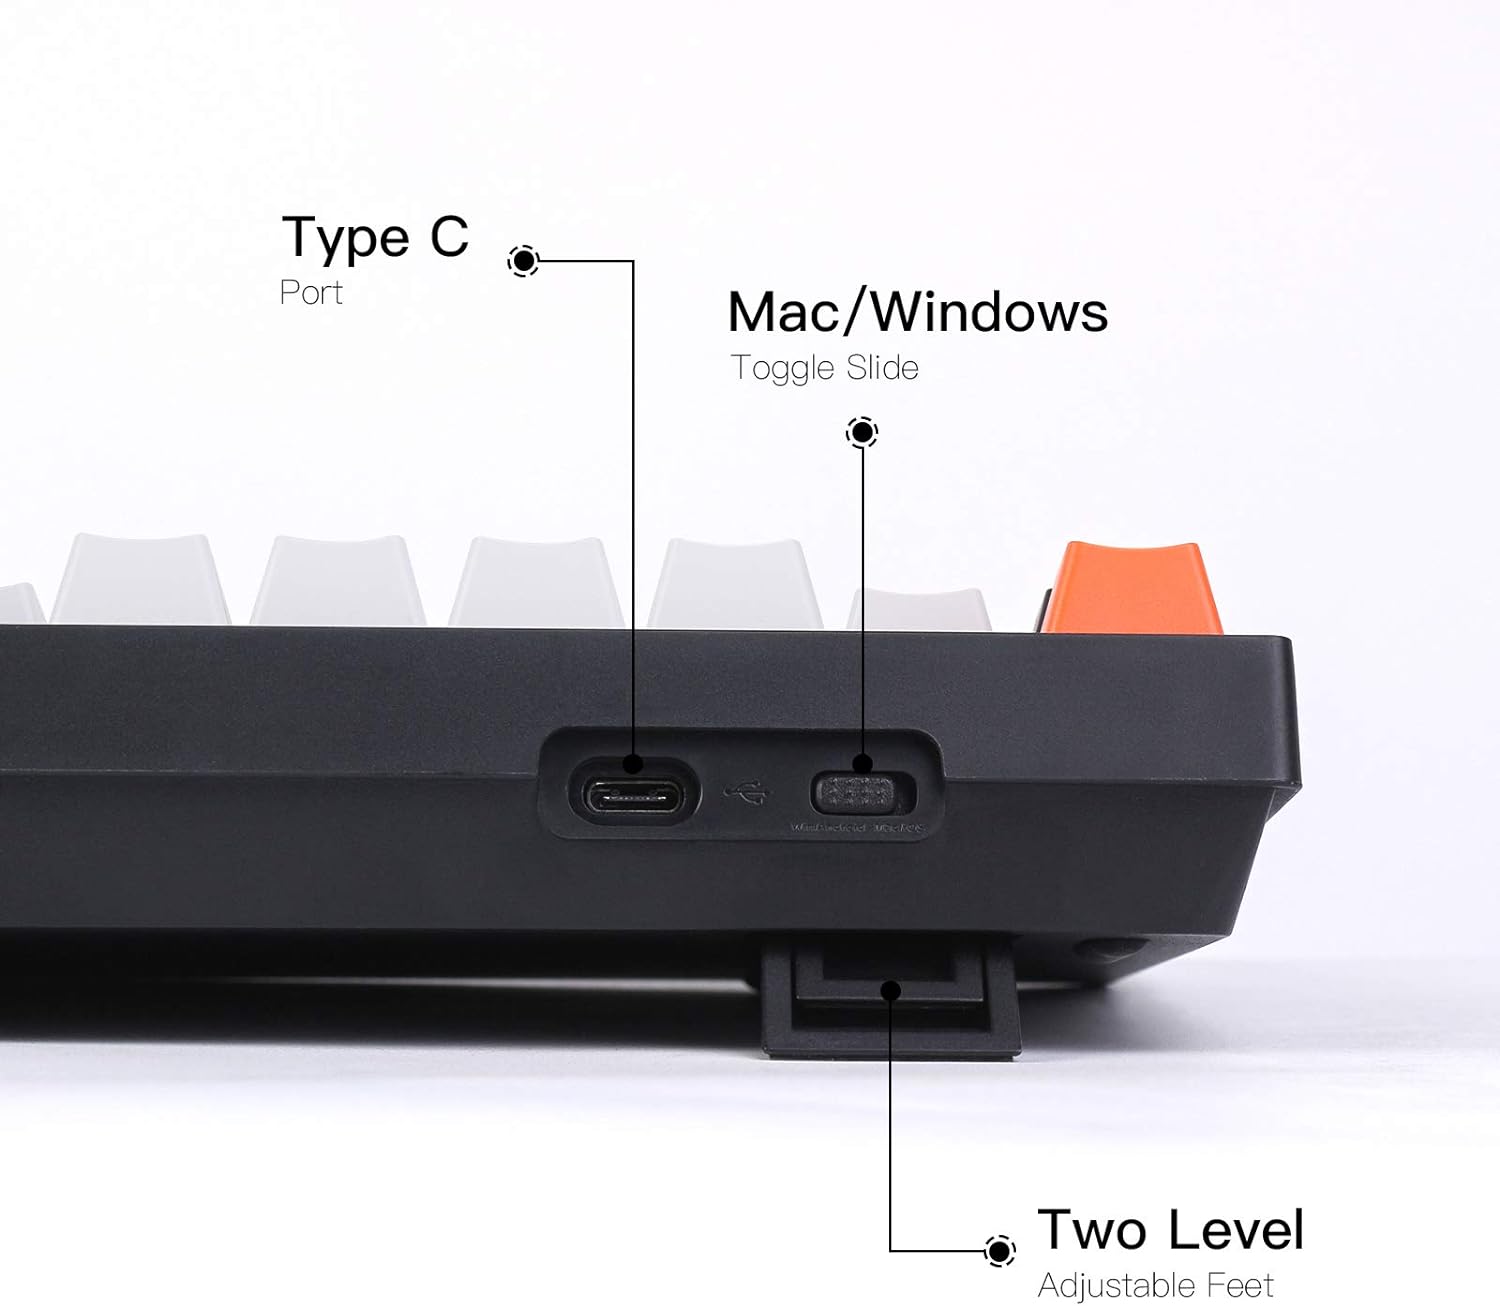 Clavier mécanique couleur rétro pleine grandeur : compatible Mac Windows, 104 touches, câble tressé USB Type-C 